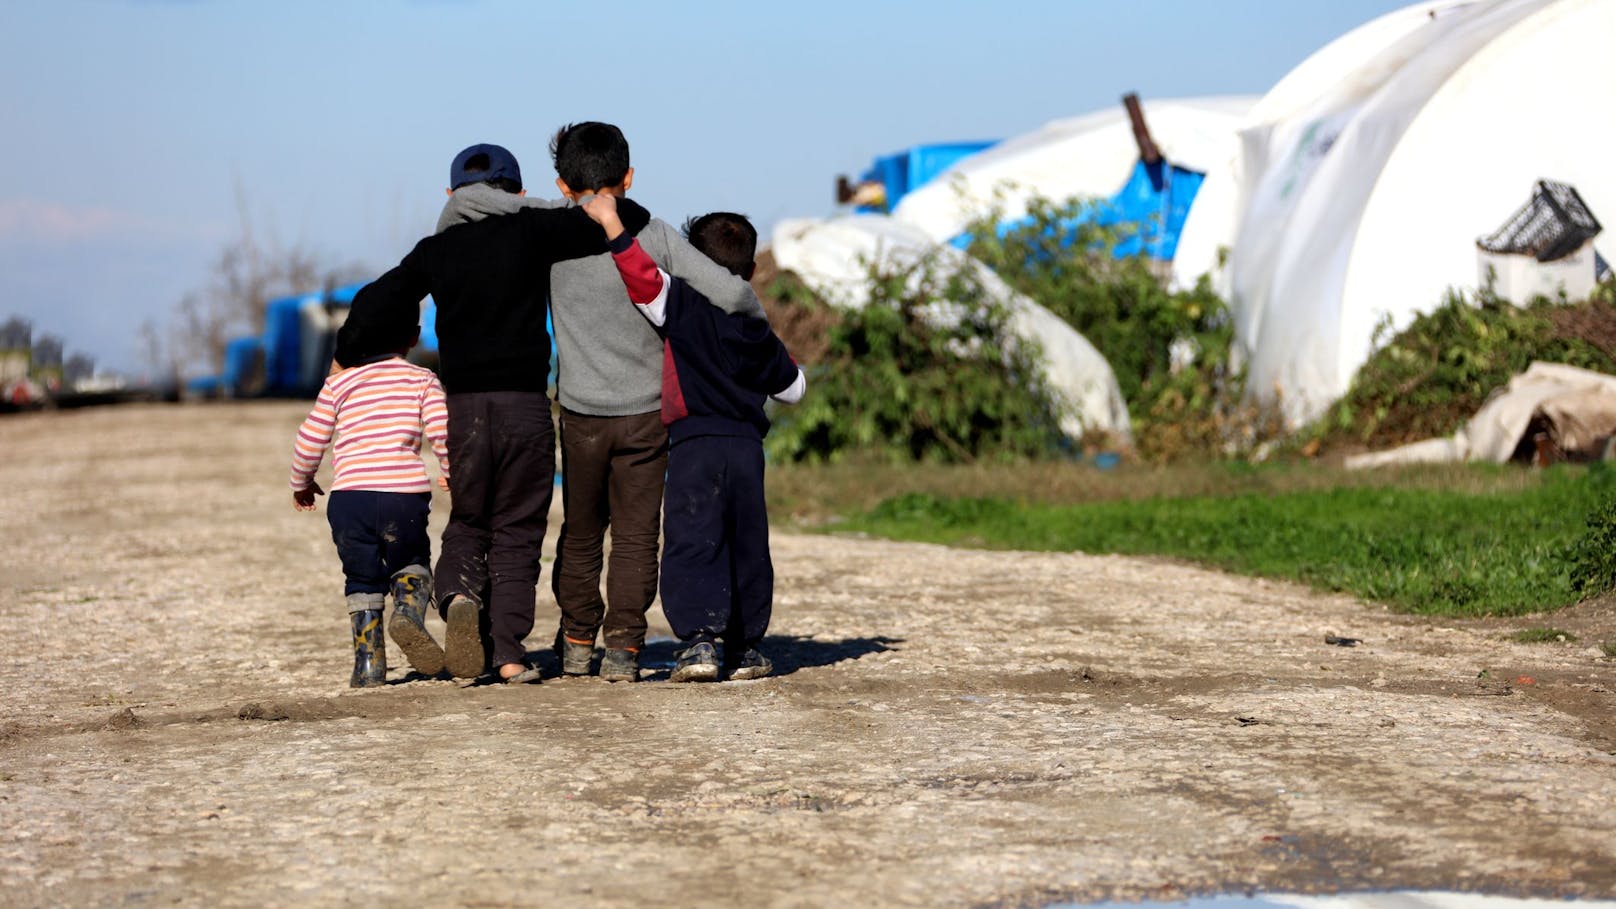 Integrationskrise – das sind die Gründe für EU-Asylpakt